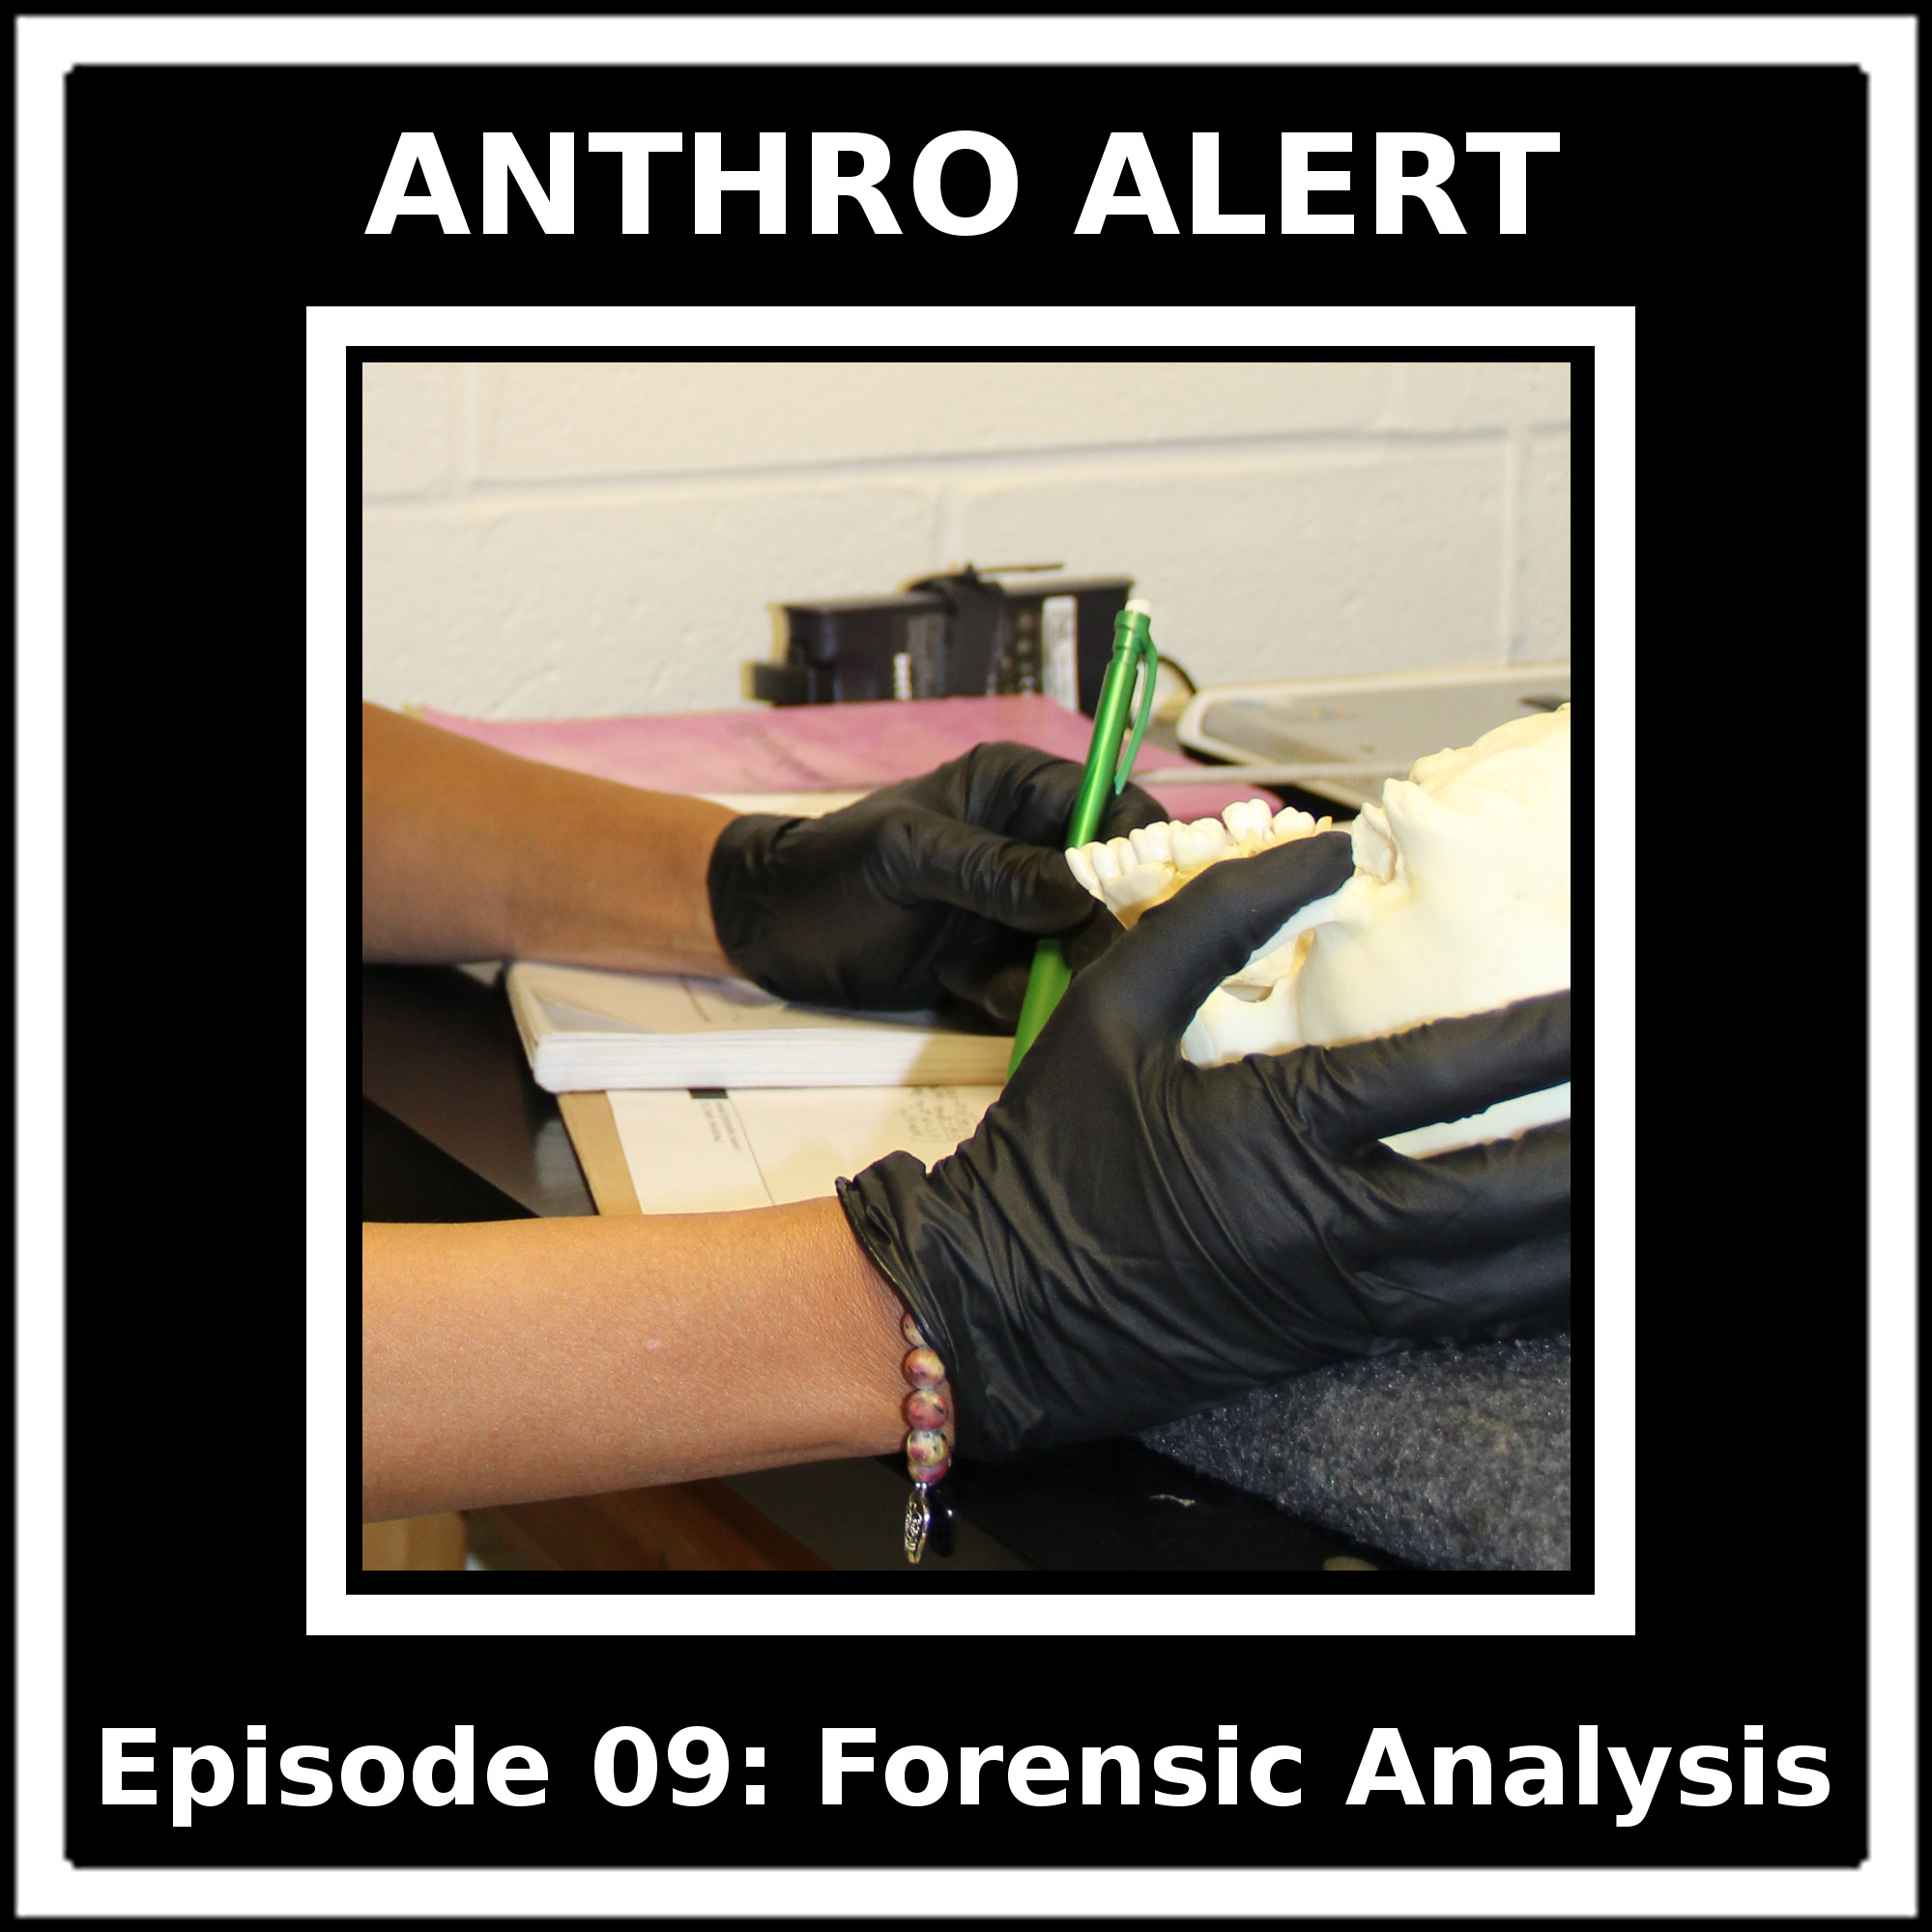 Episode 09: Forensic Analysis